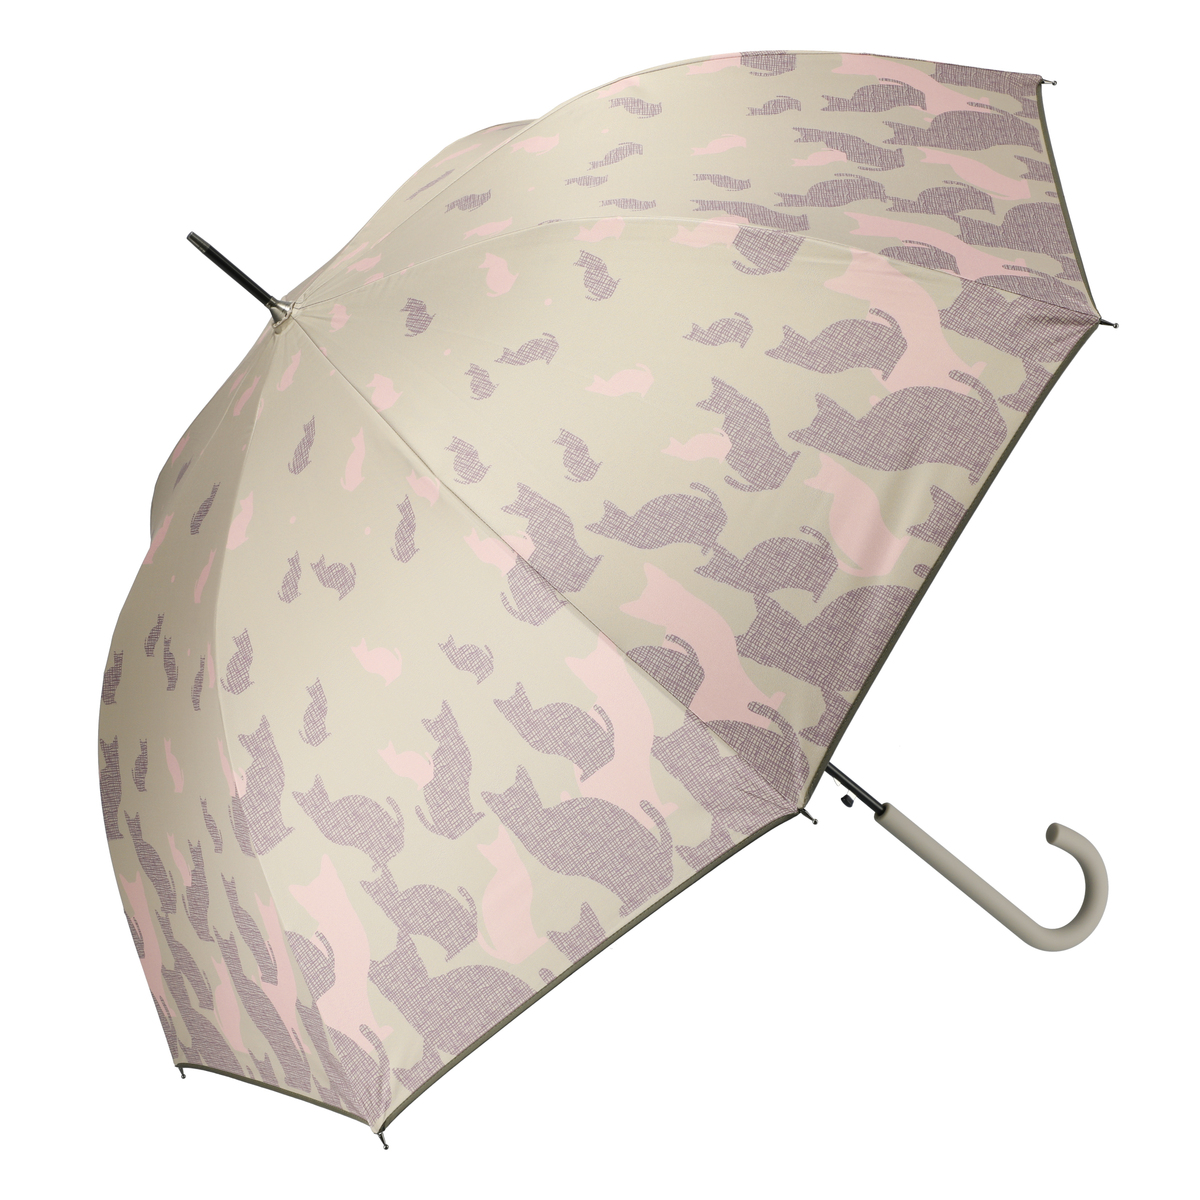  ねこと毎日UV1級遮光晴雨兼用モザイクねこ長傘  モカ